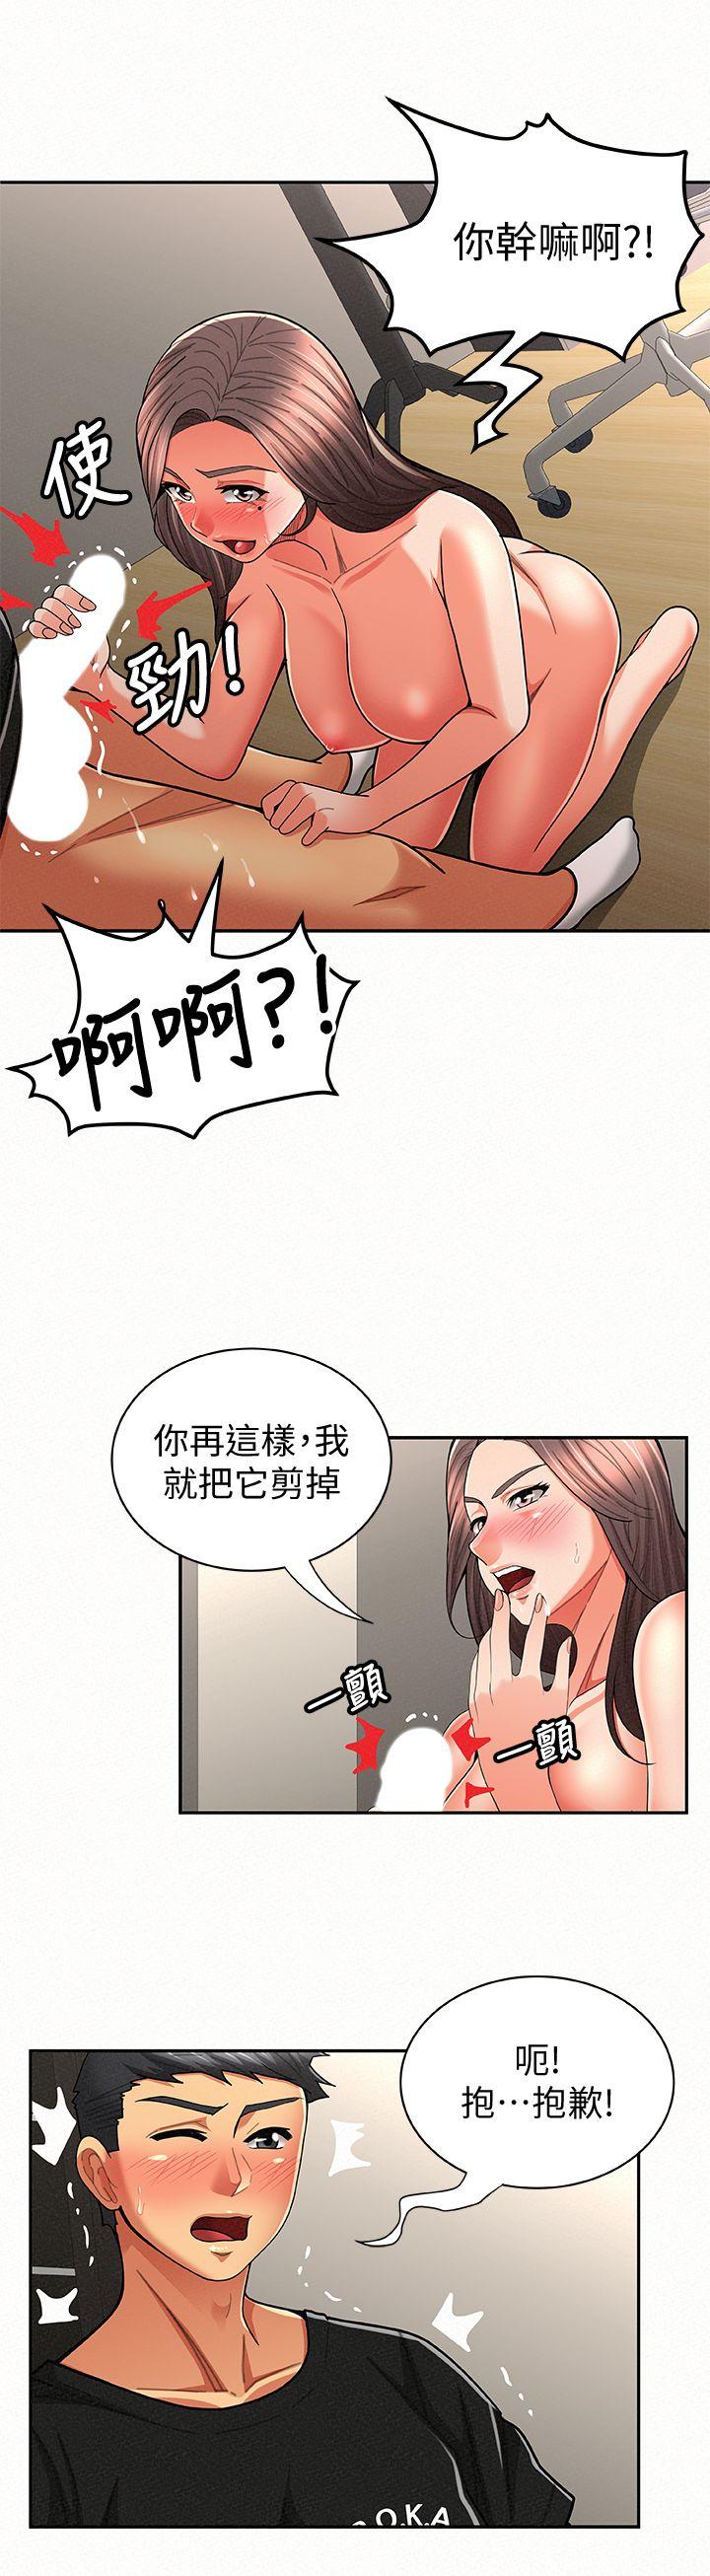 韩国污漫画 報告夫人 第23话-夫人逐渐加深的怀疑 8